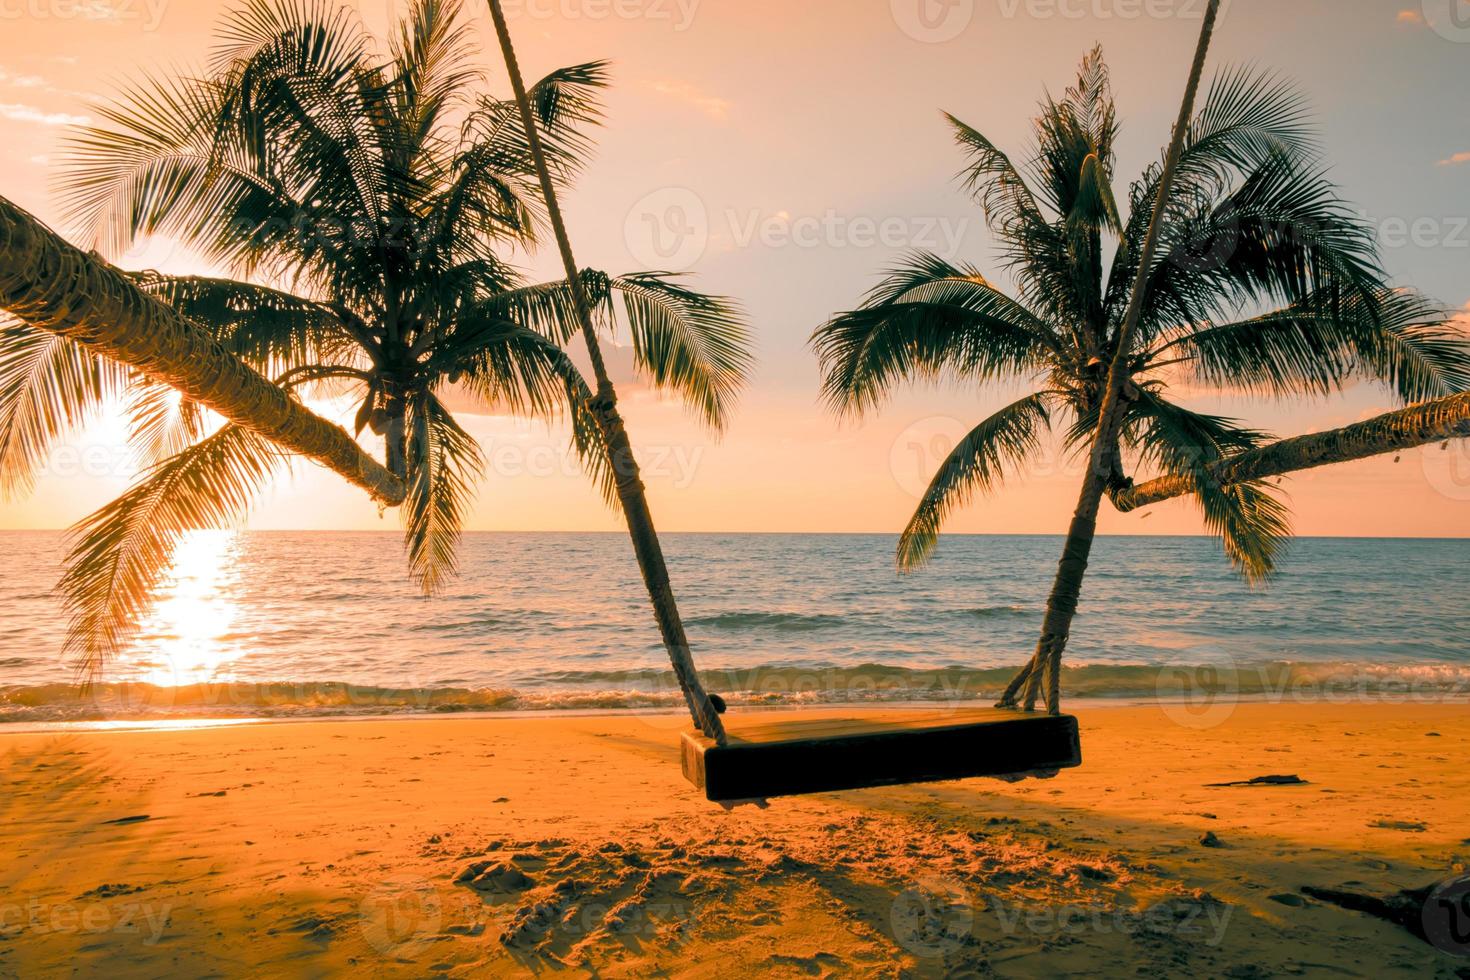 holzschaukel schöner sonnenuntergang am meeresstrand mit palme und blauem himmel für reisen im urlaub entspannen sie sich, fotostil vintage foto